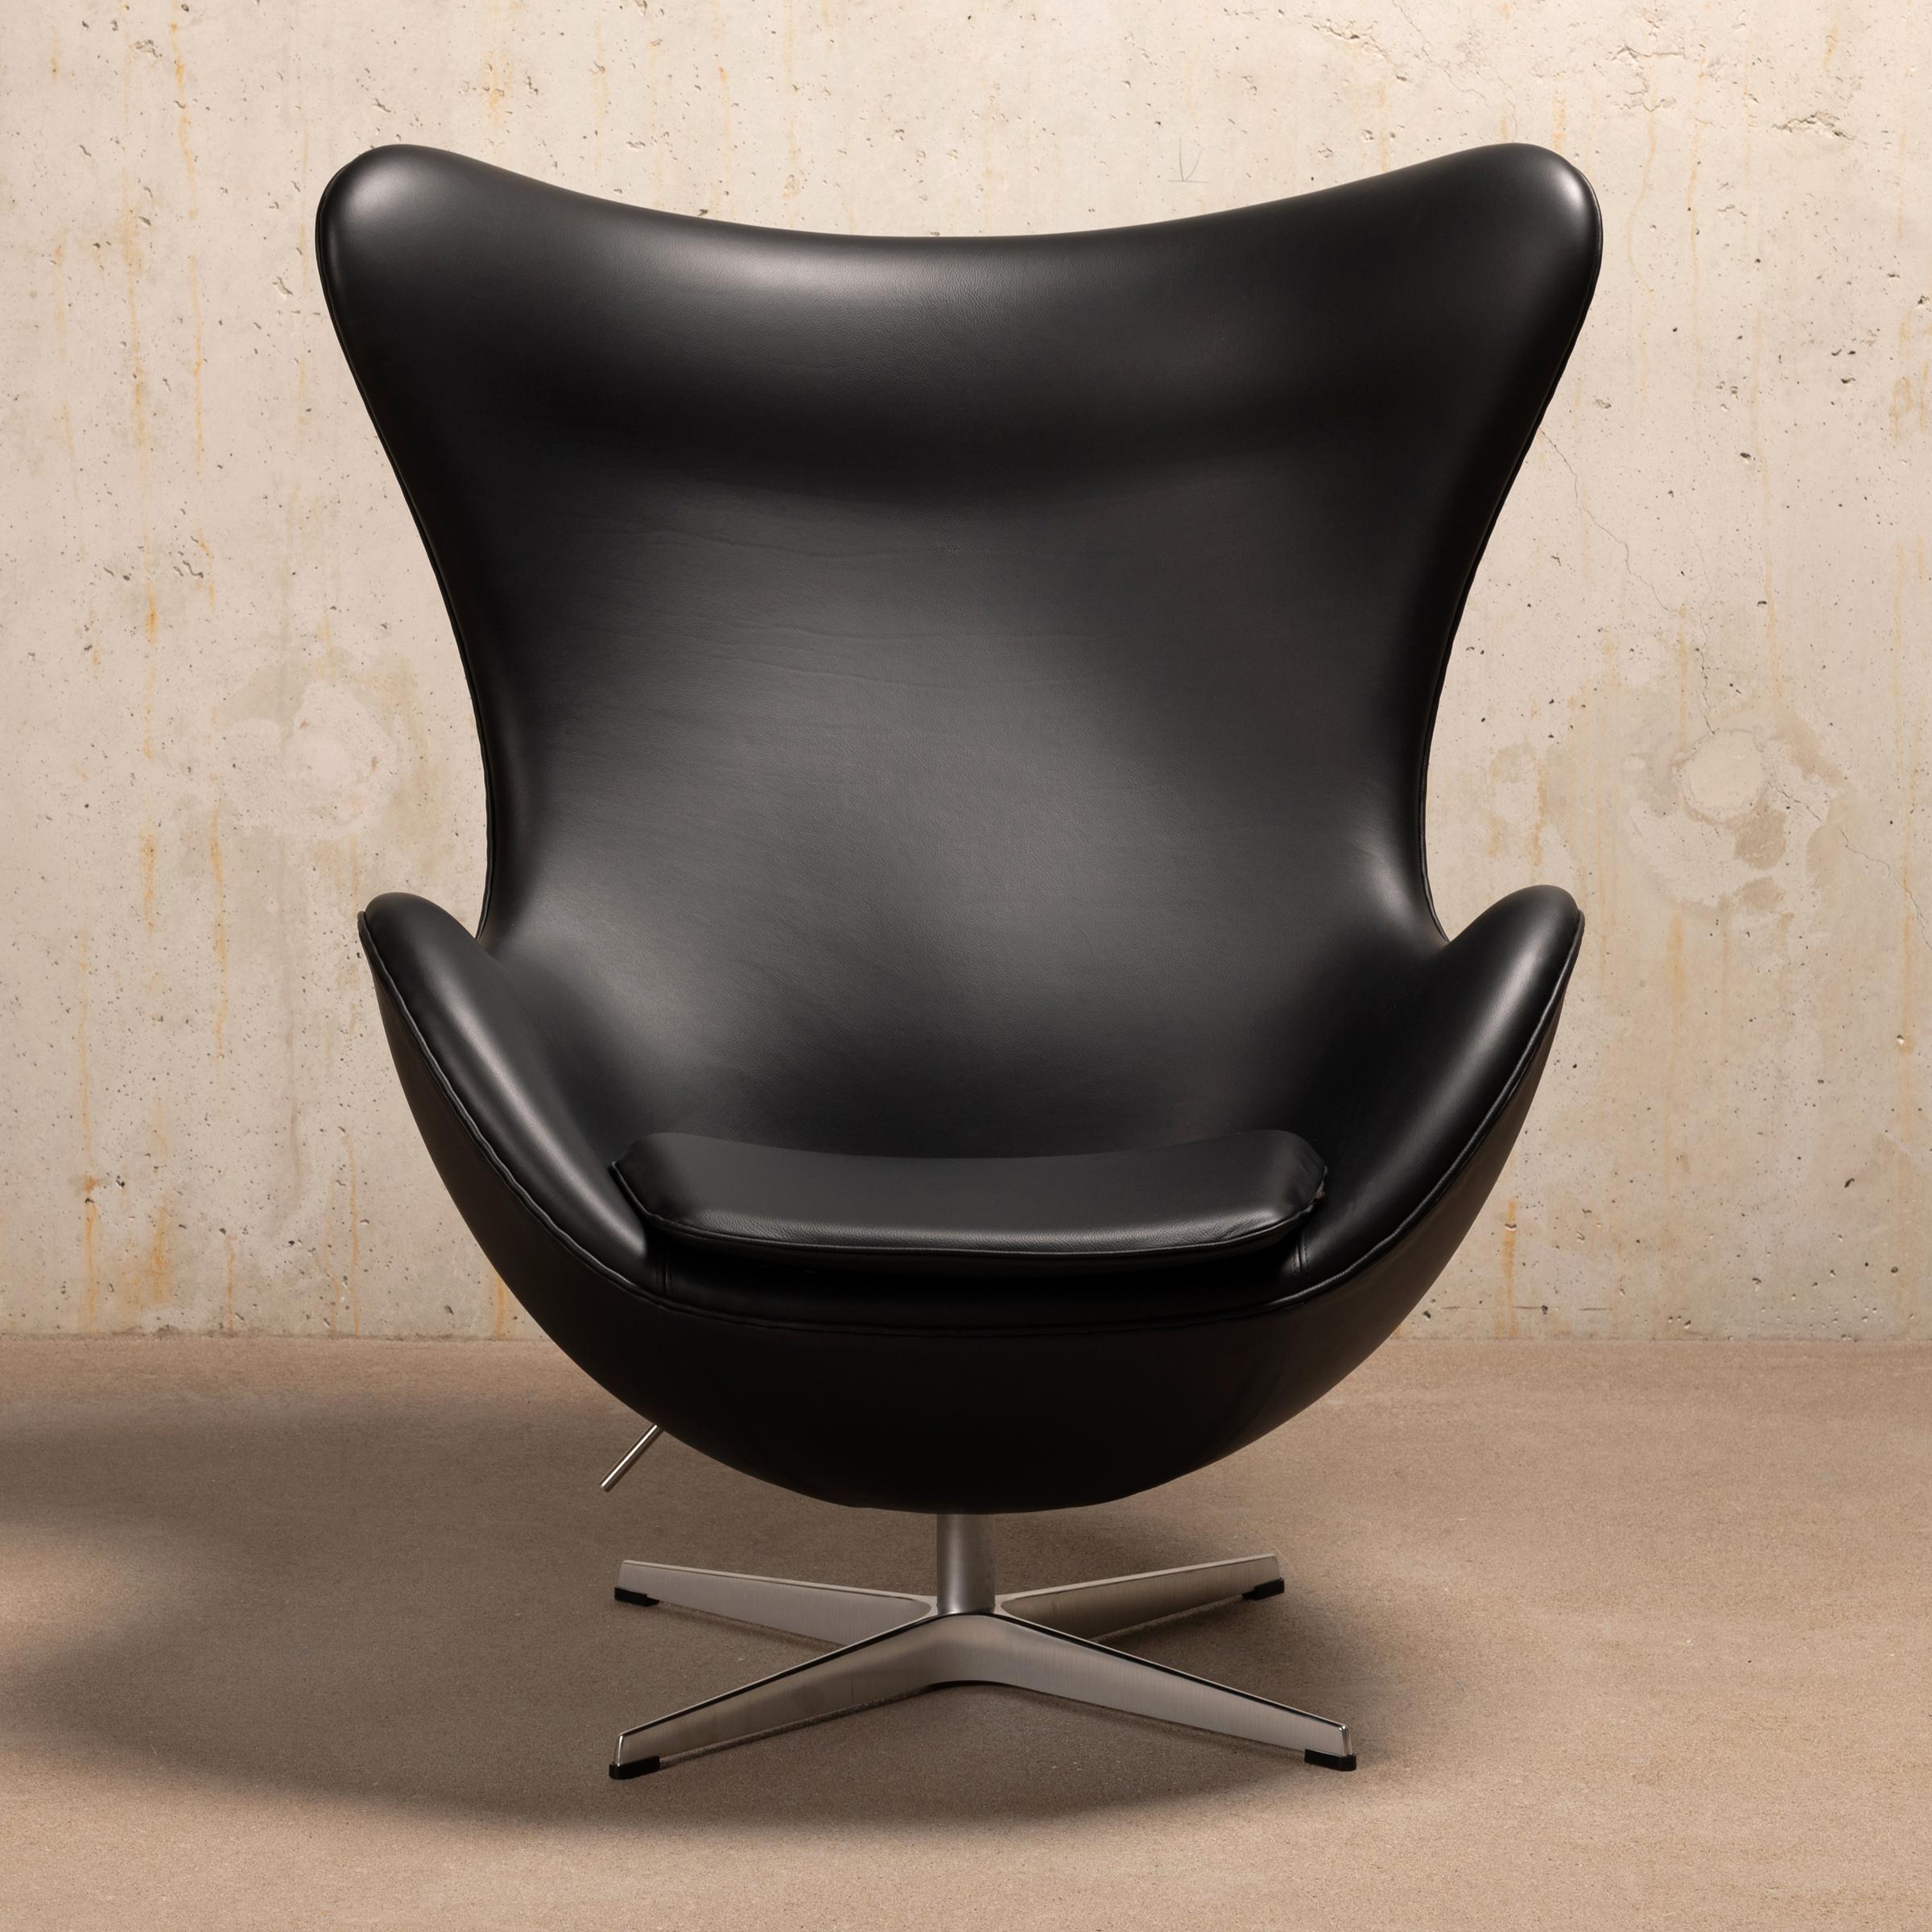 L'emblématique et magnifique fauteuil Egg conçu par Arne Jacobsen pour Fitz Hansen en 1958. Original Essential en cuir noir avec base en aluminium poli avec fonction de pivotement / inclinaison réglable. Tous en excellent état d'usage et d'origine.